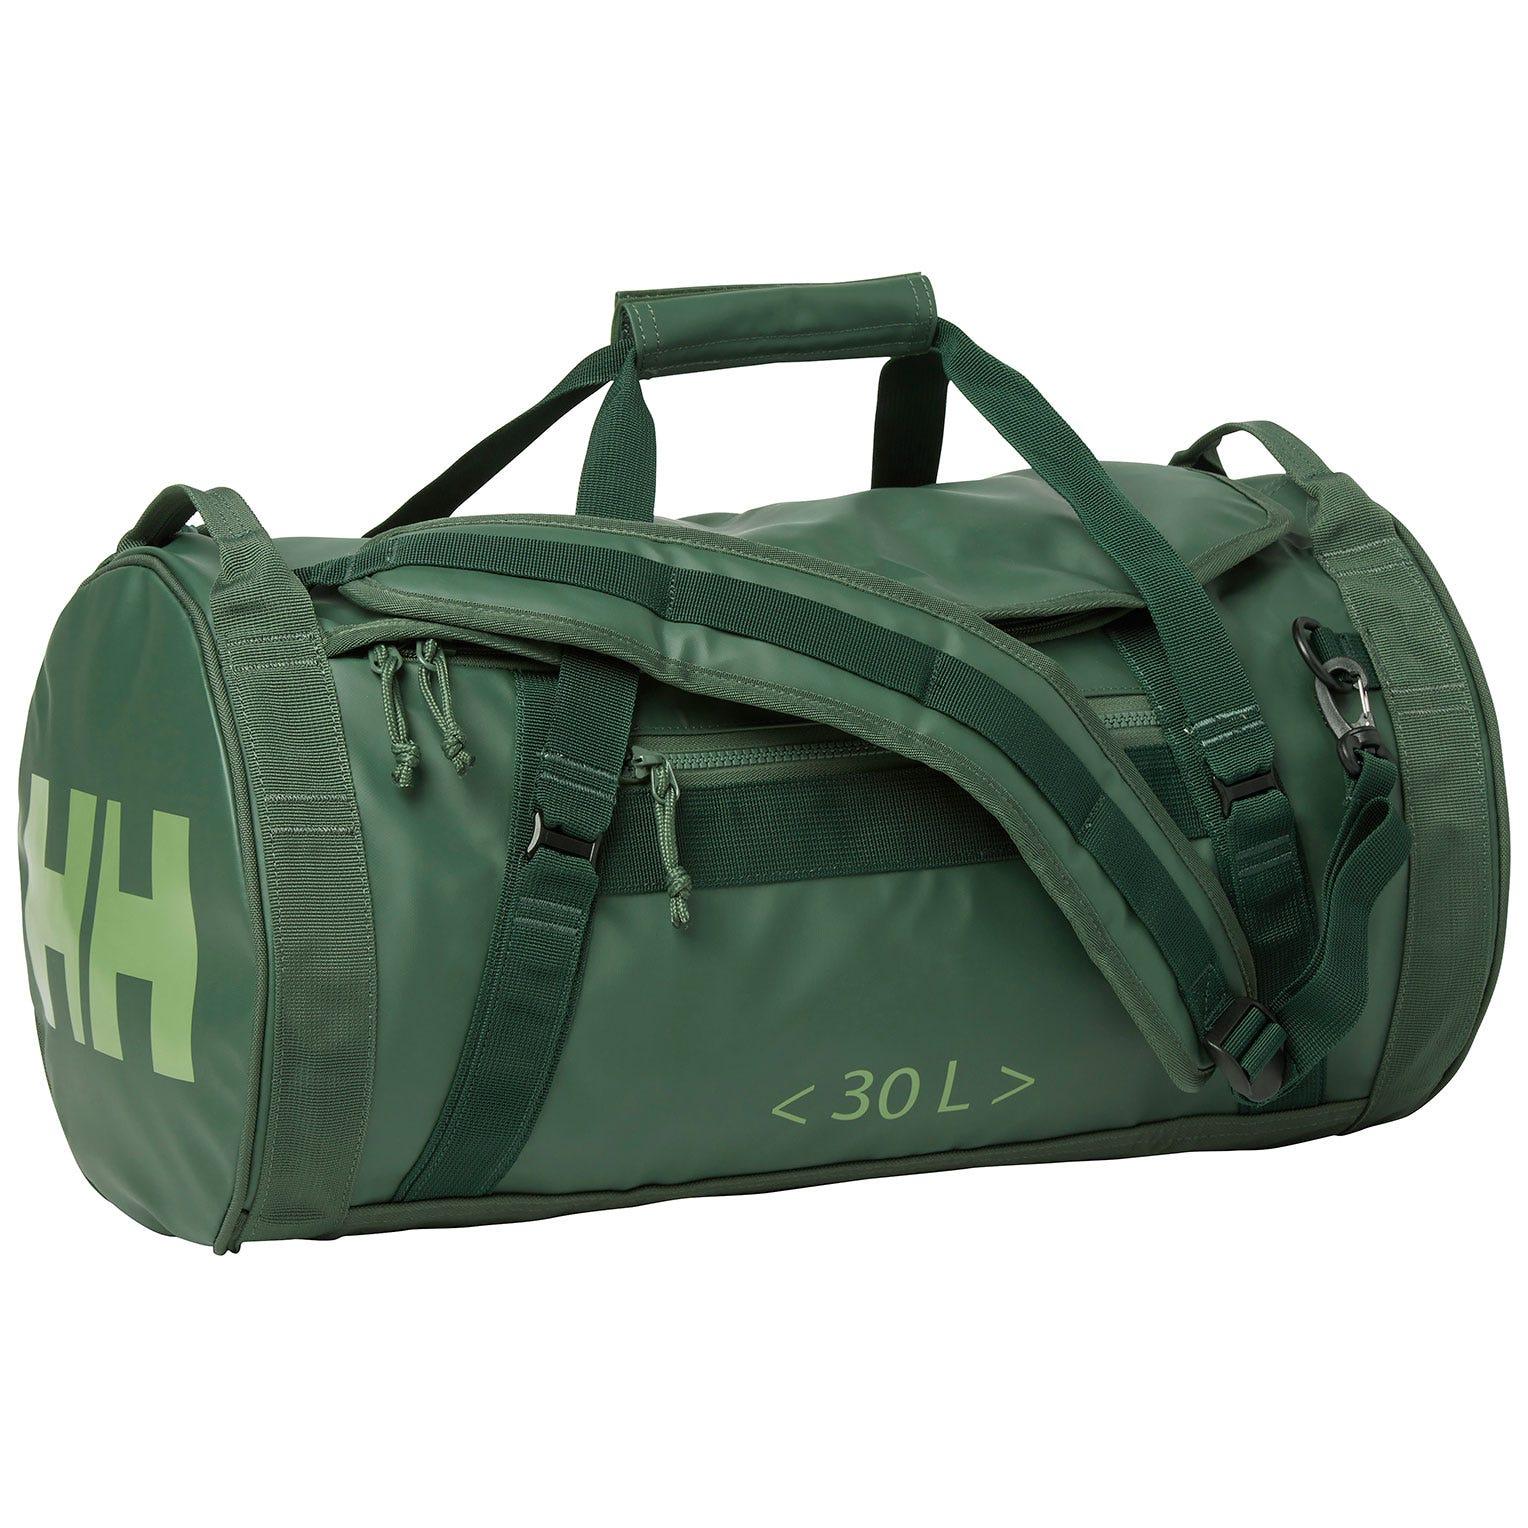 Helly Hansen Hh Waterproof Duffel Bag 2 30l Std in Green | Lyst